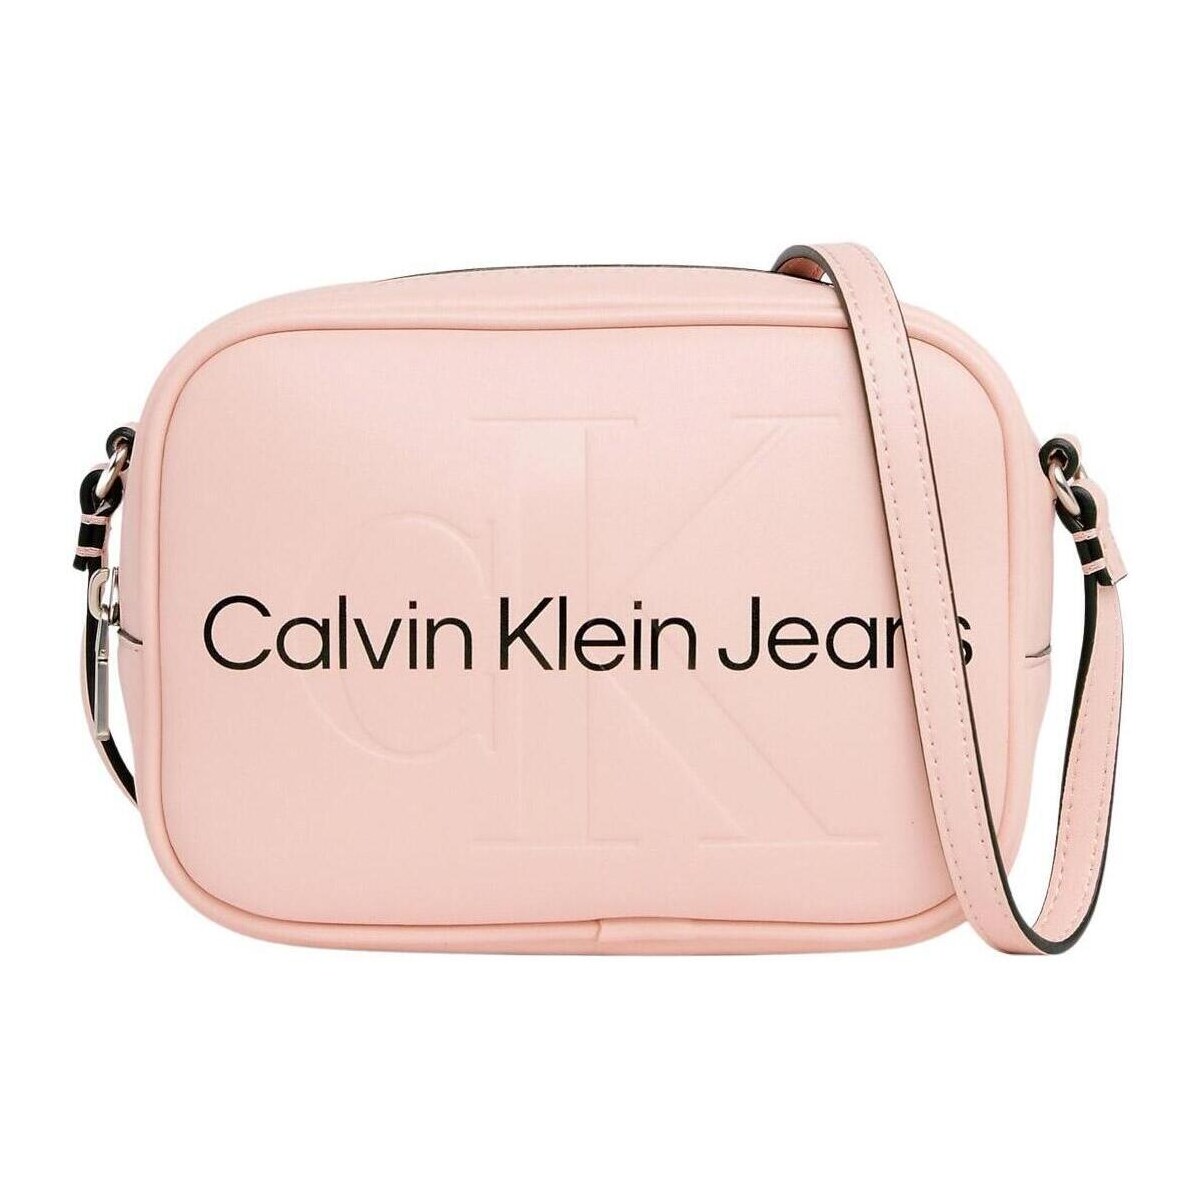 Taschen Damen Handtasche Calvin Klein Jeans  Rosa